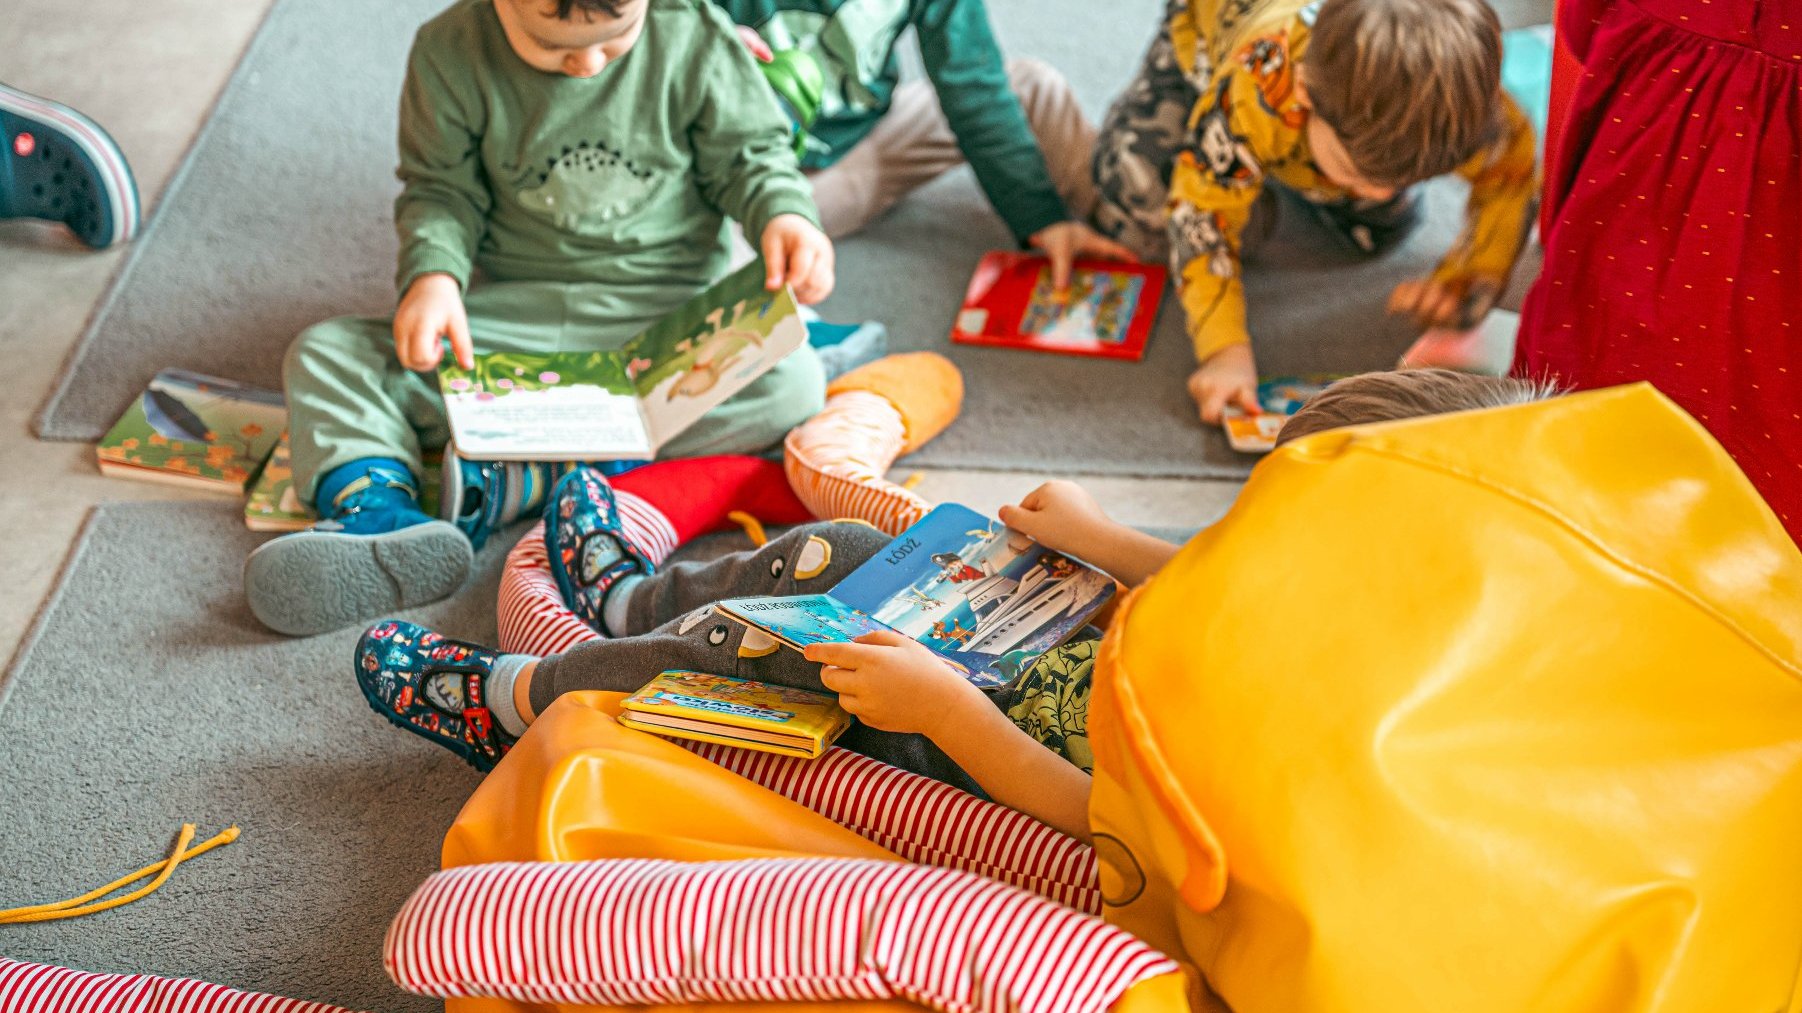 Na zdjęciu dzieci bawiące się na podłodze w żłobku, w rękach trzymają książki, obok leży żółty puf